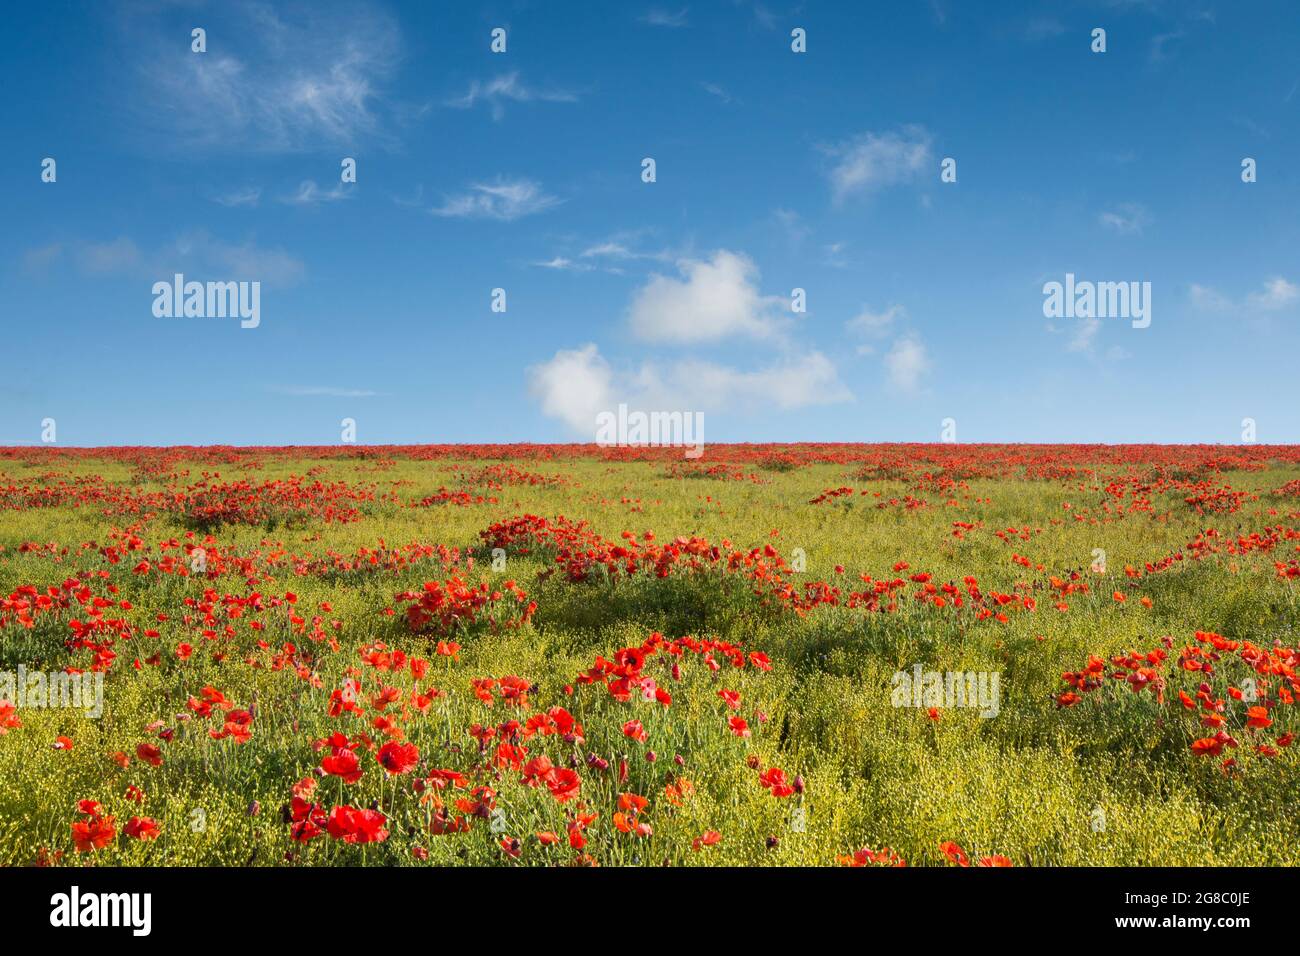 Champ de coquelicots rouges sur le côté d'une colline contre ciel bleu avec des nuages blancs, coquelicots à l'horizon, horizon.growing dans le champ de Flax, Linseed, Banque D'Images